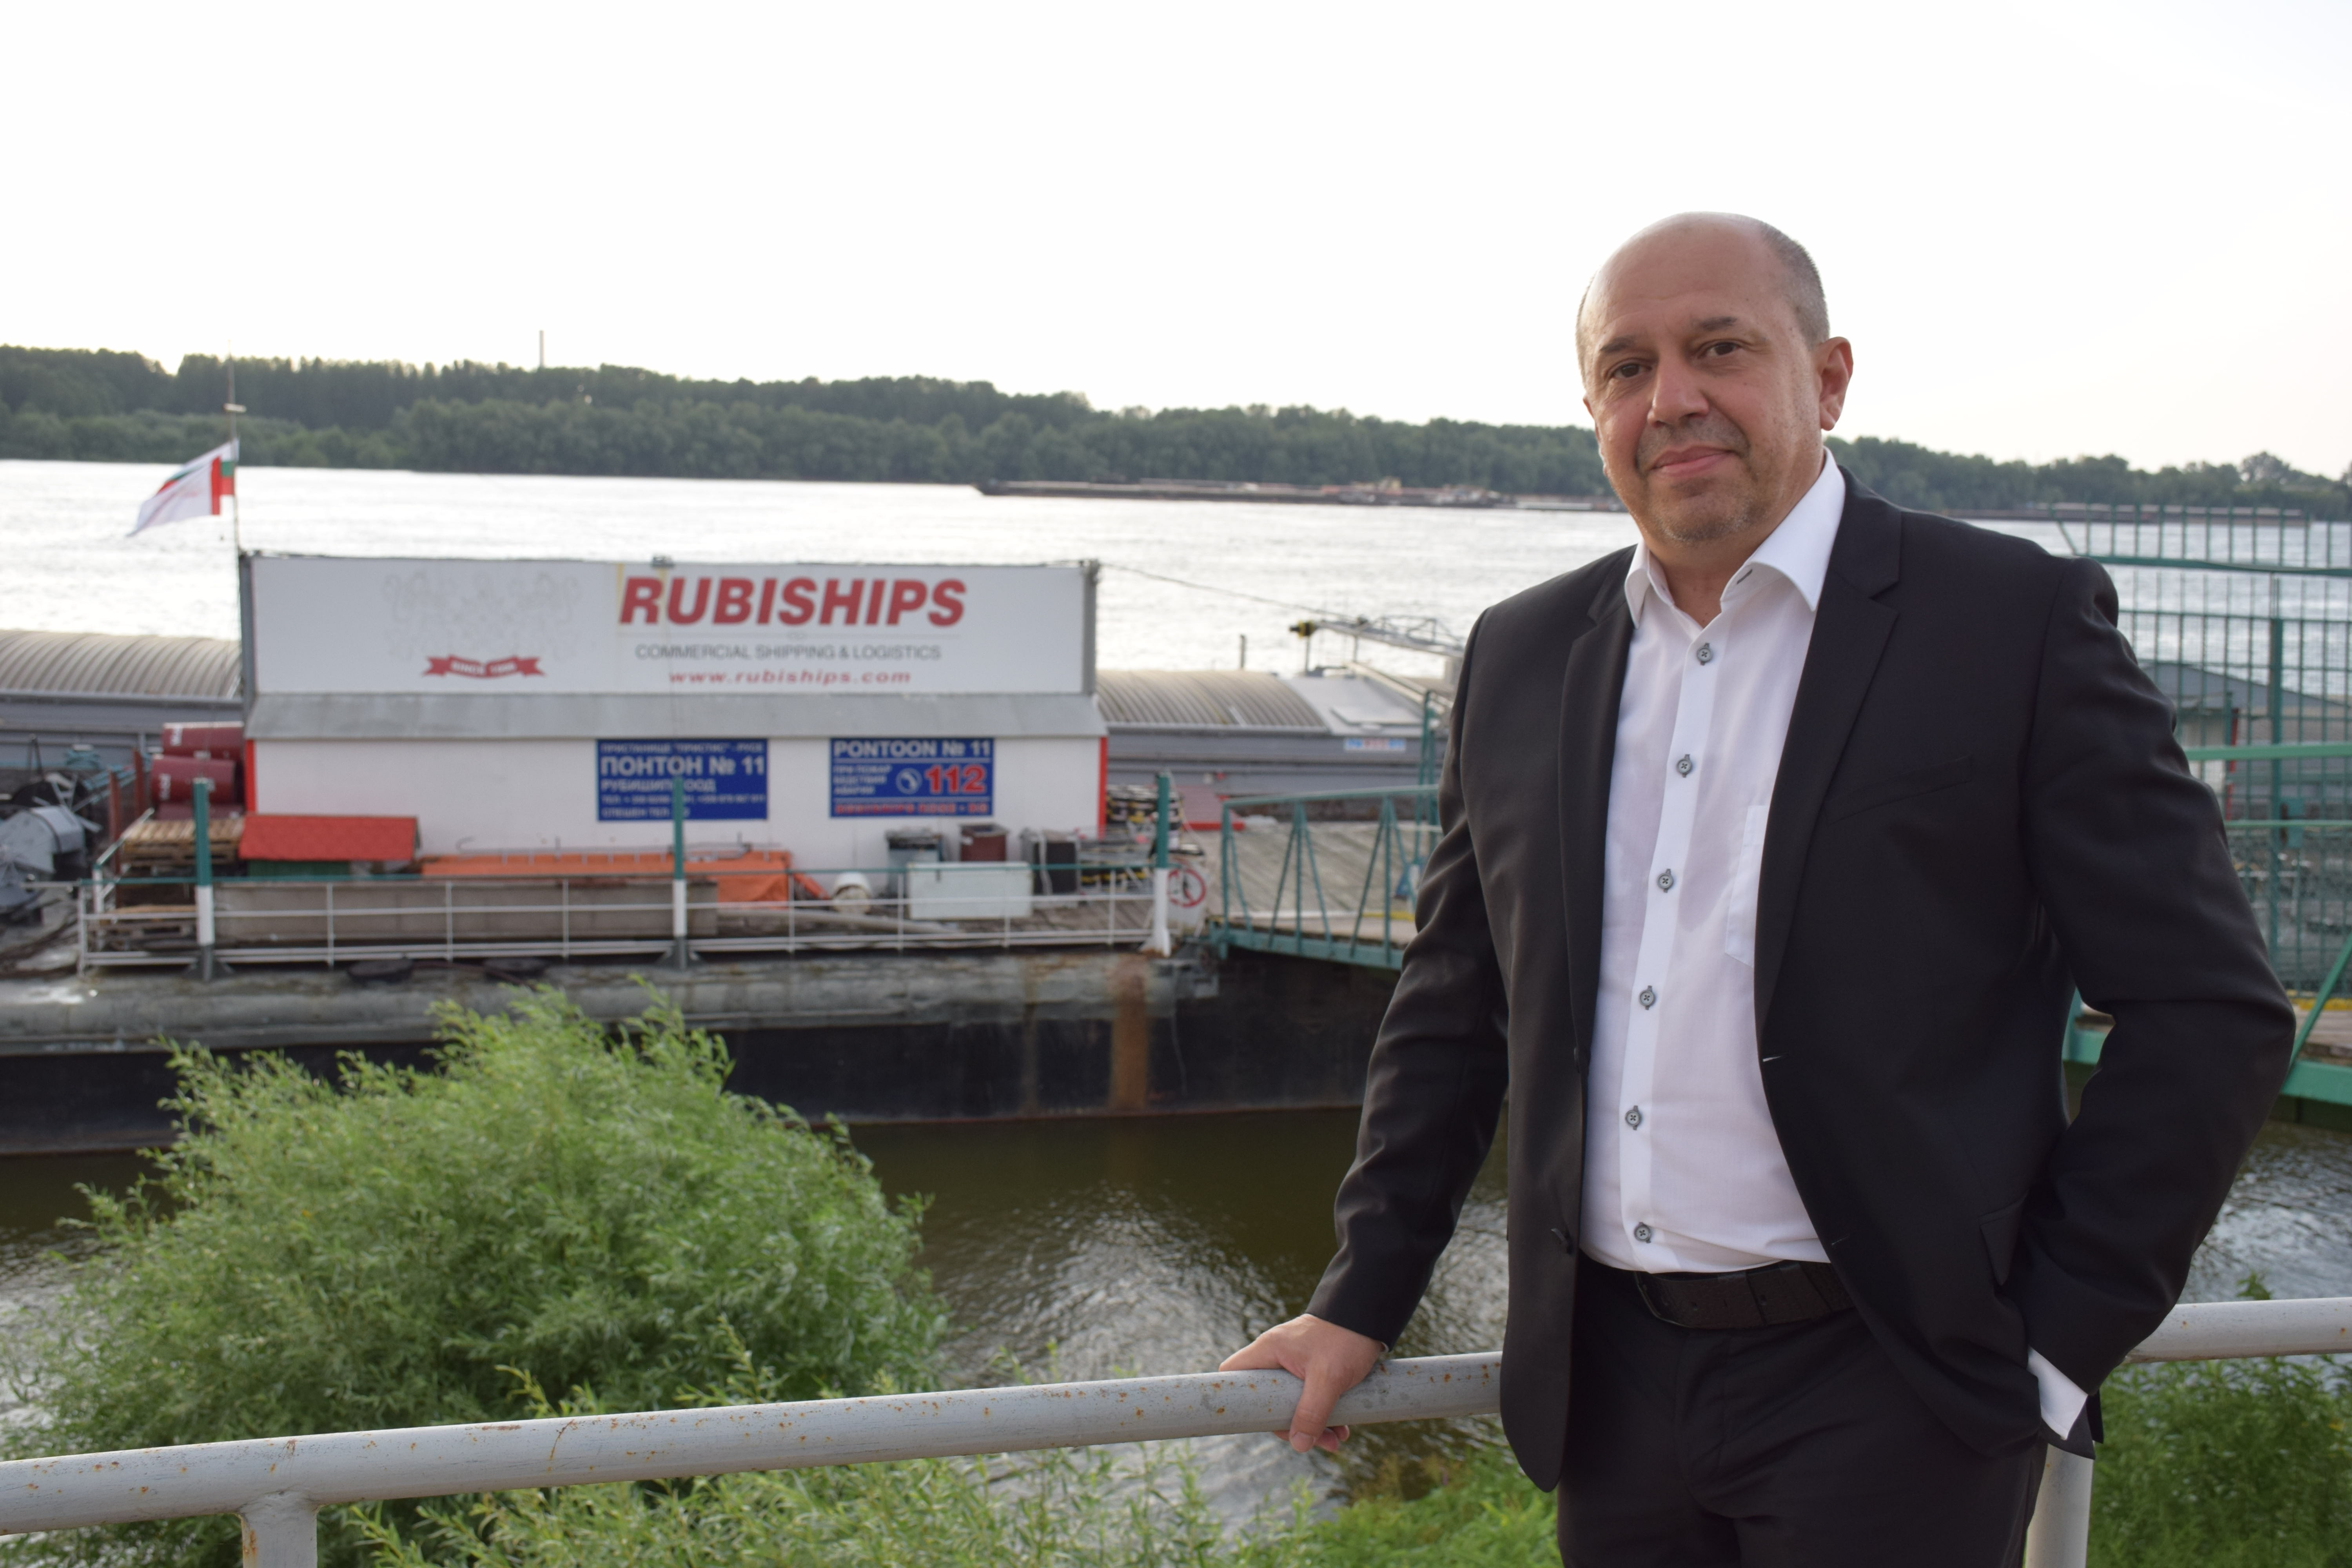    25 години „Рубишипс”- от два кораба под наем до Шампионската лига на Рейн и Дунав

